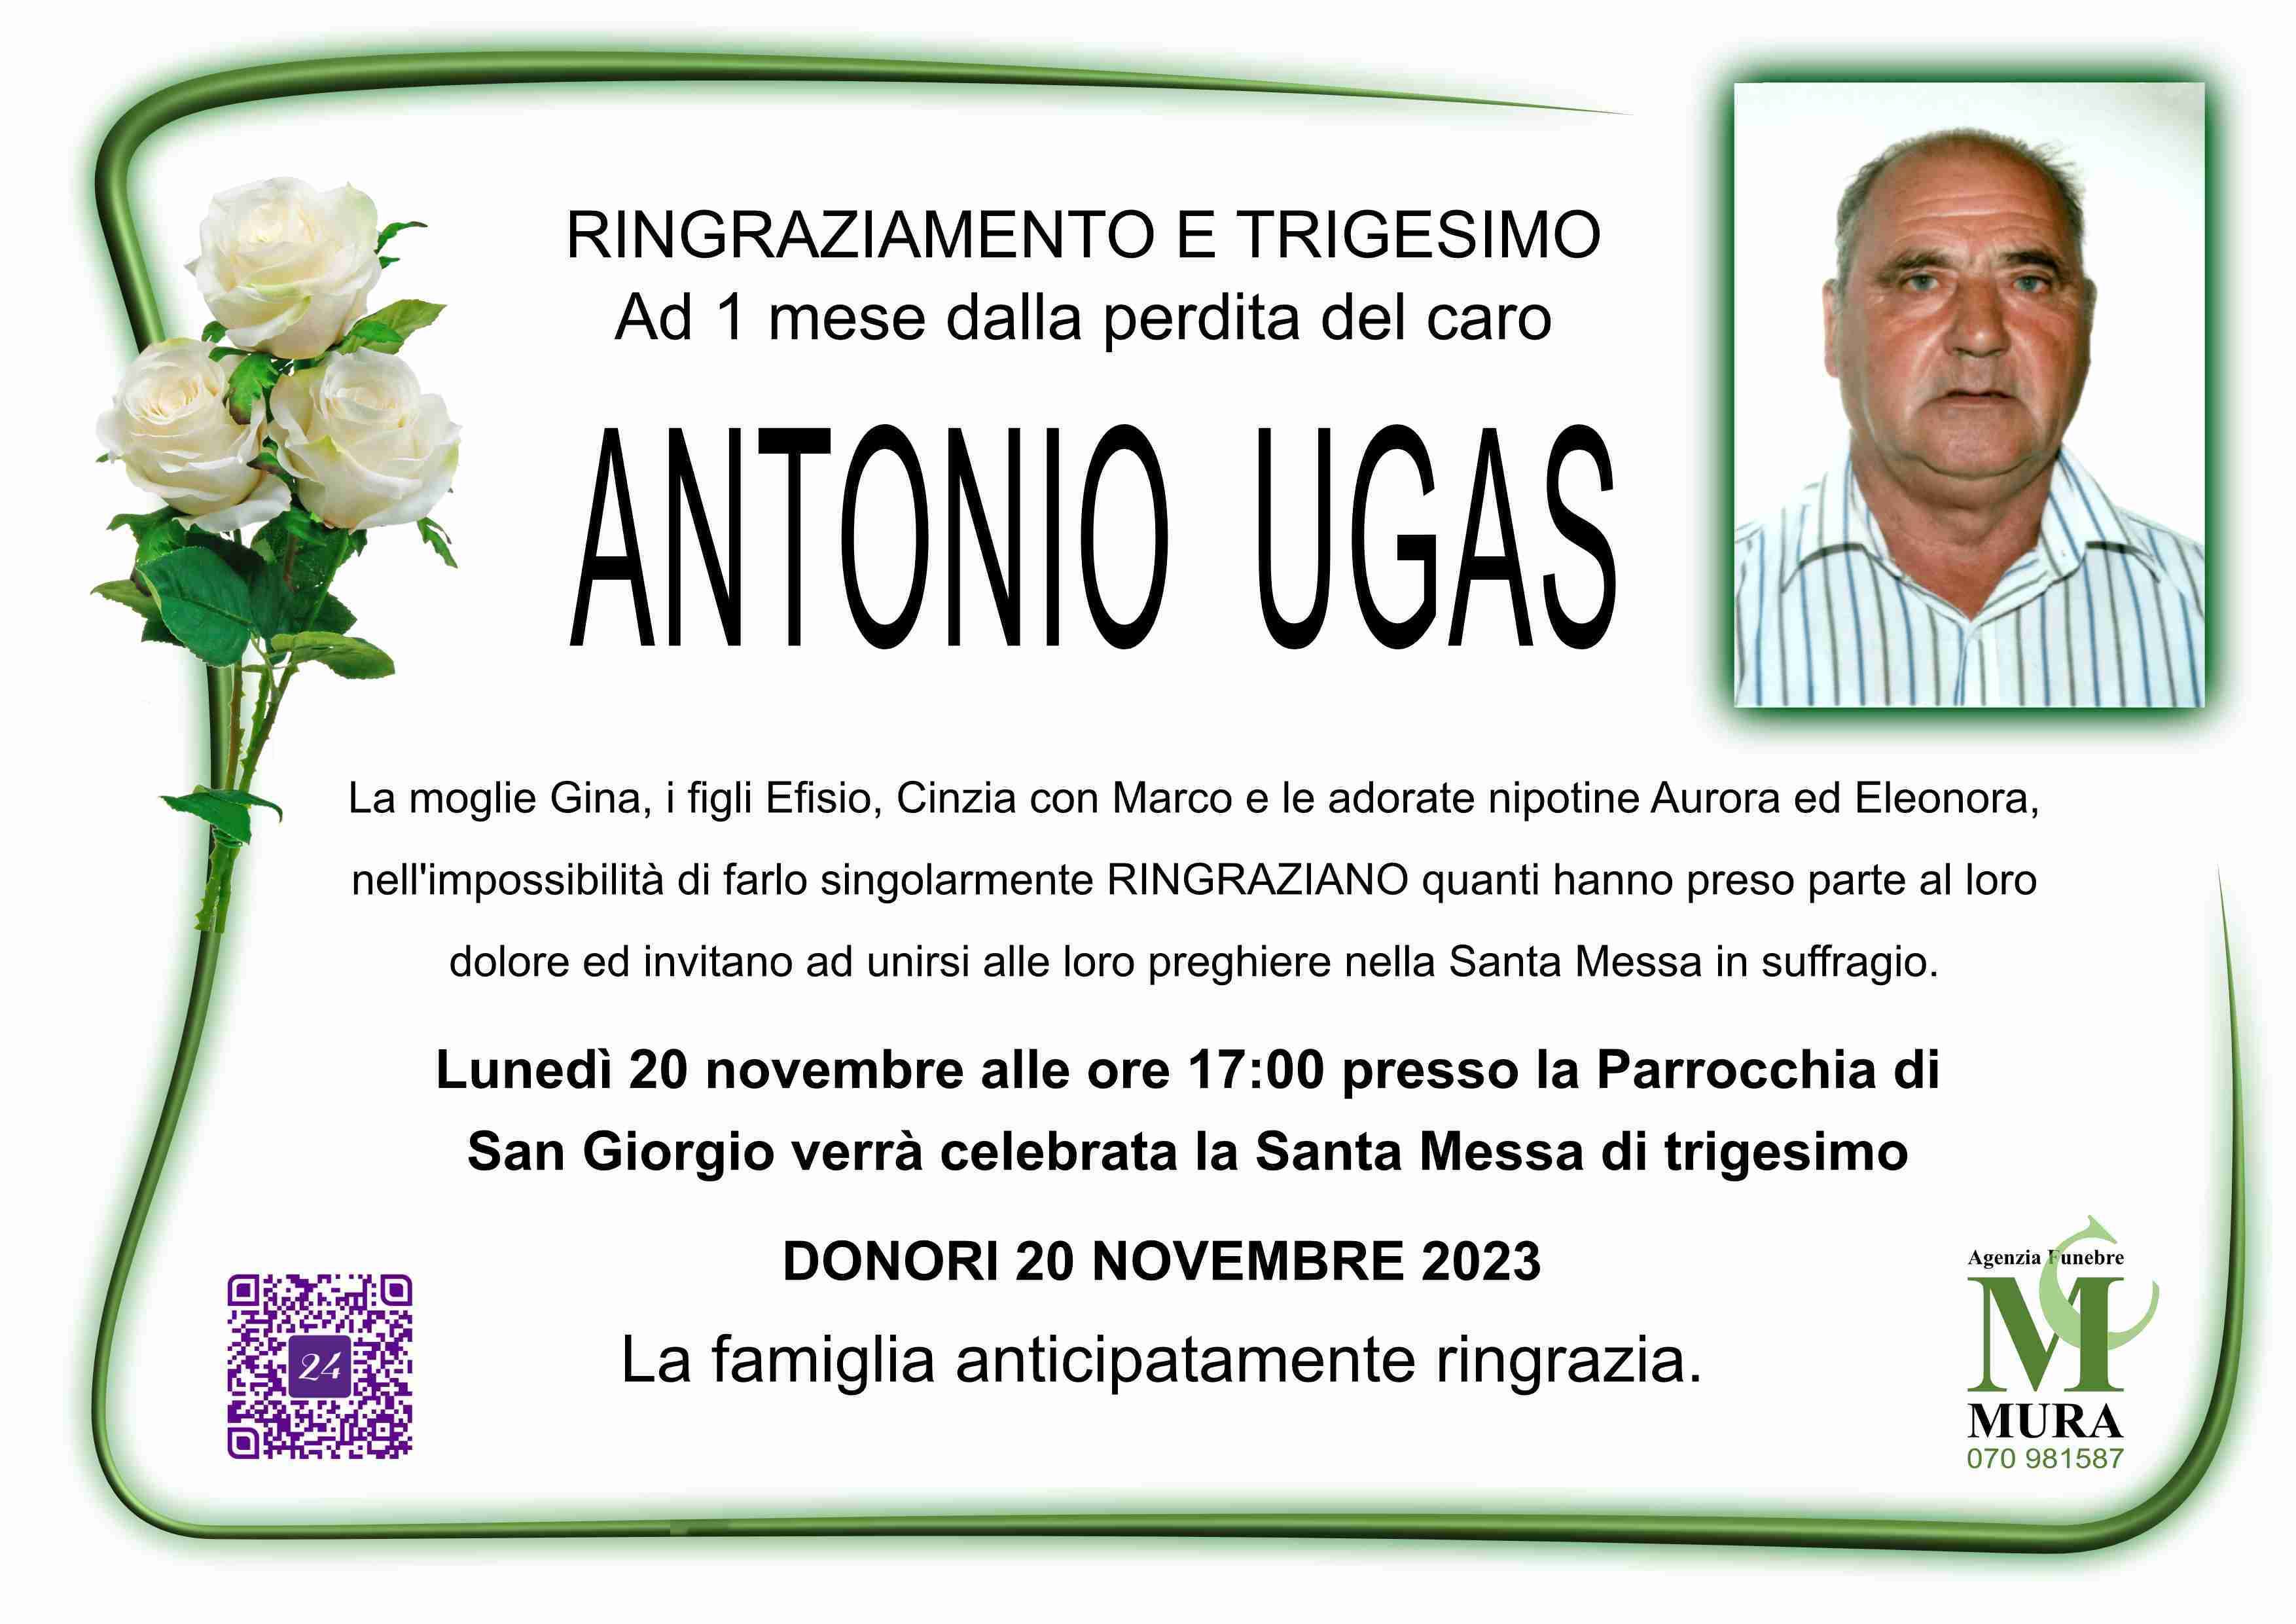 Antonio Ugas